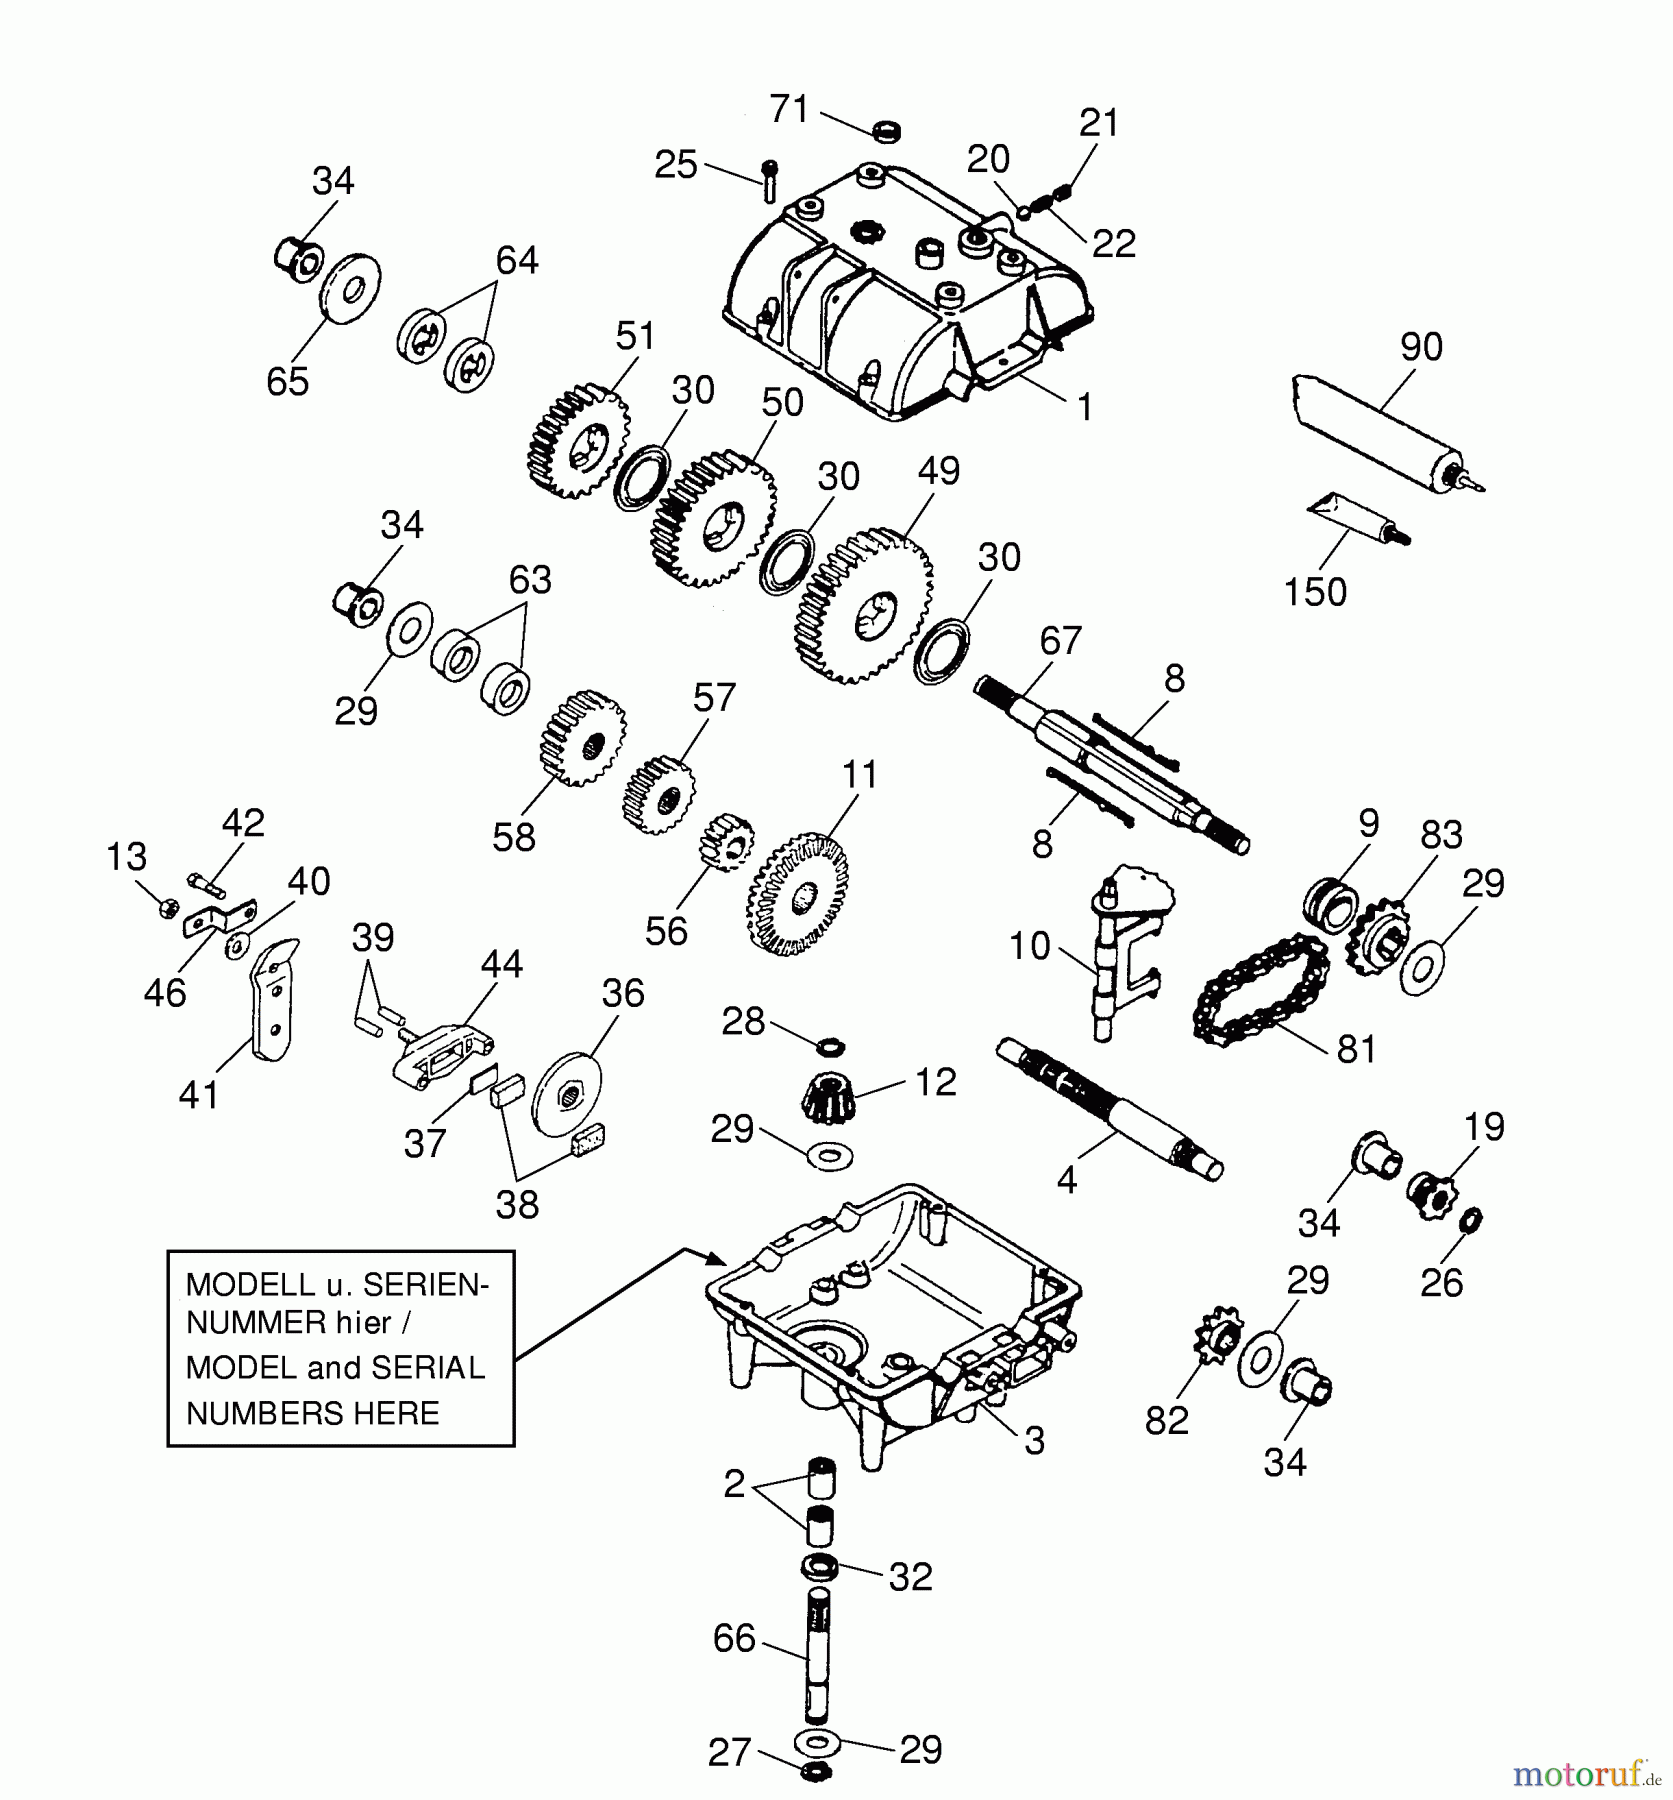  Wolf-Garten Scooter OHV 3 6990000 Serie A  (1997) Getriebe